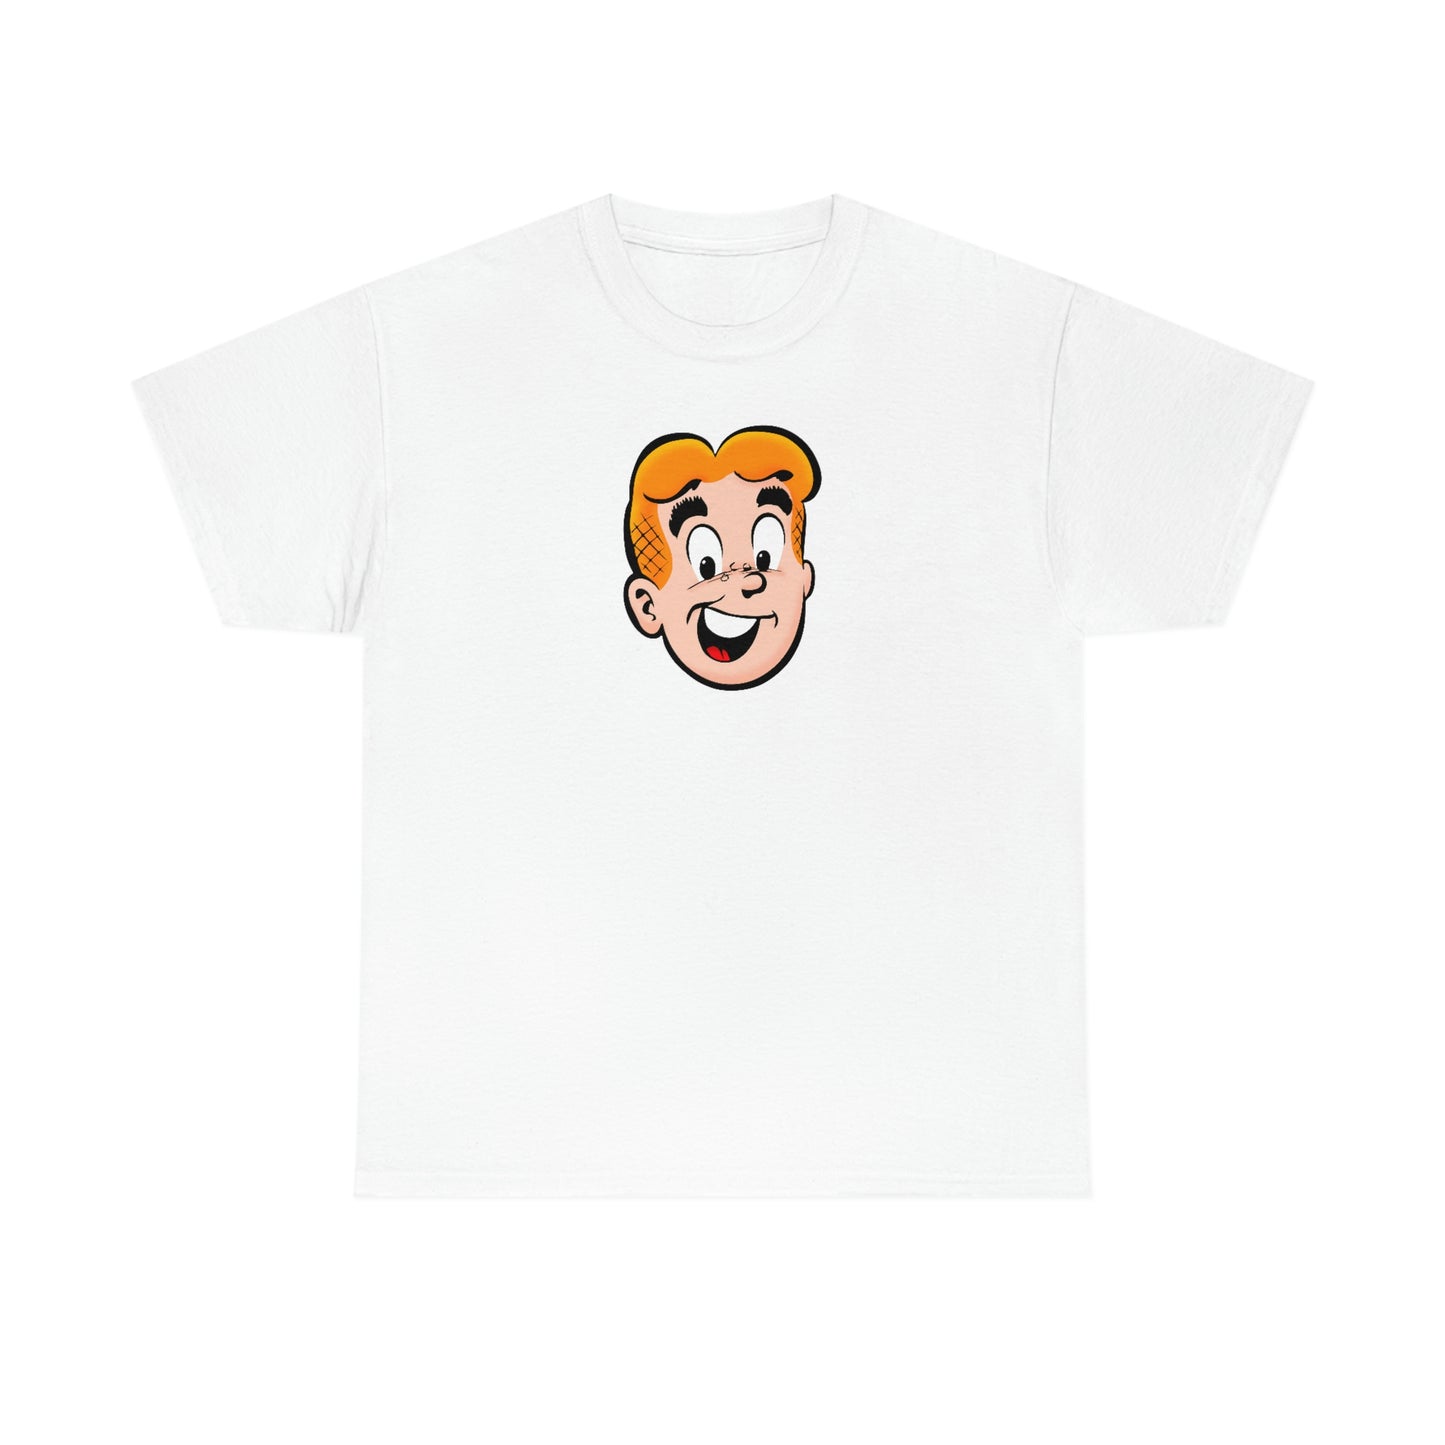 Archie T-Shirt